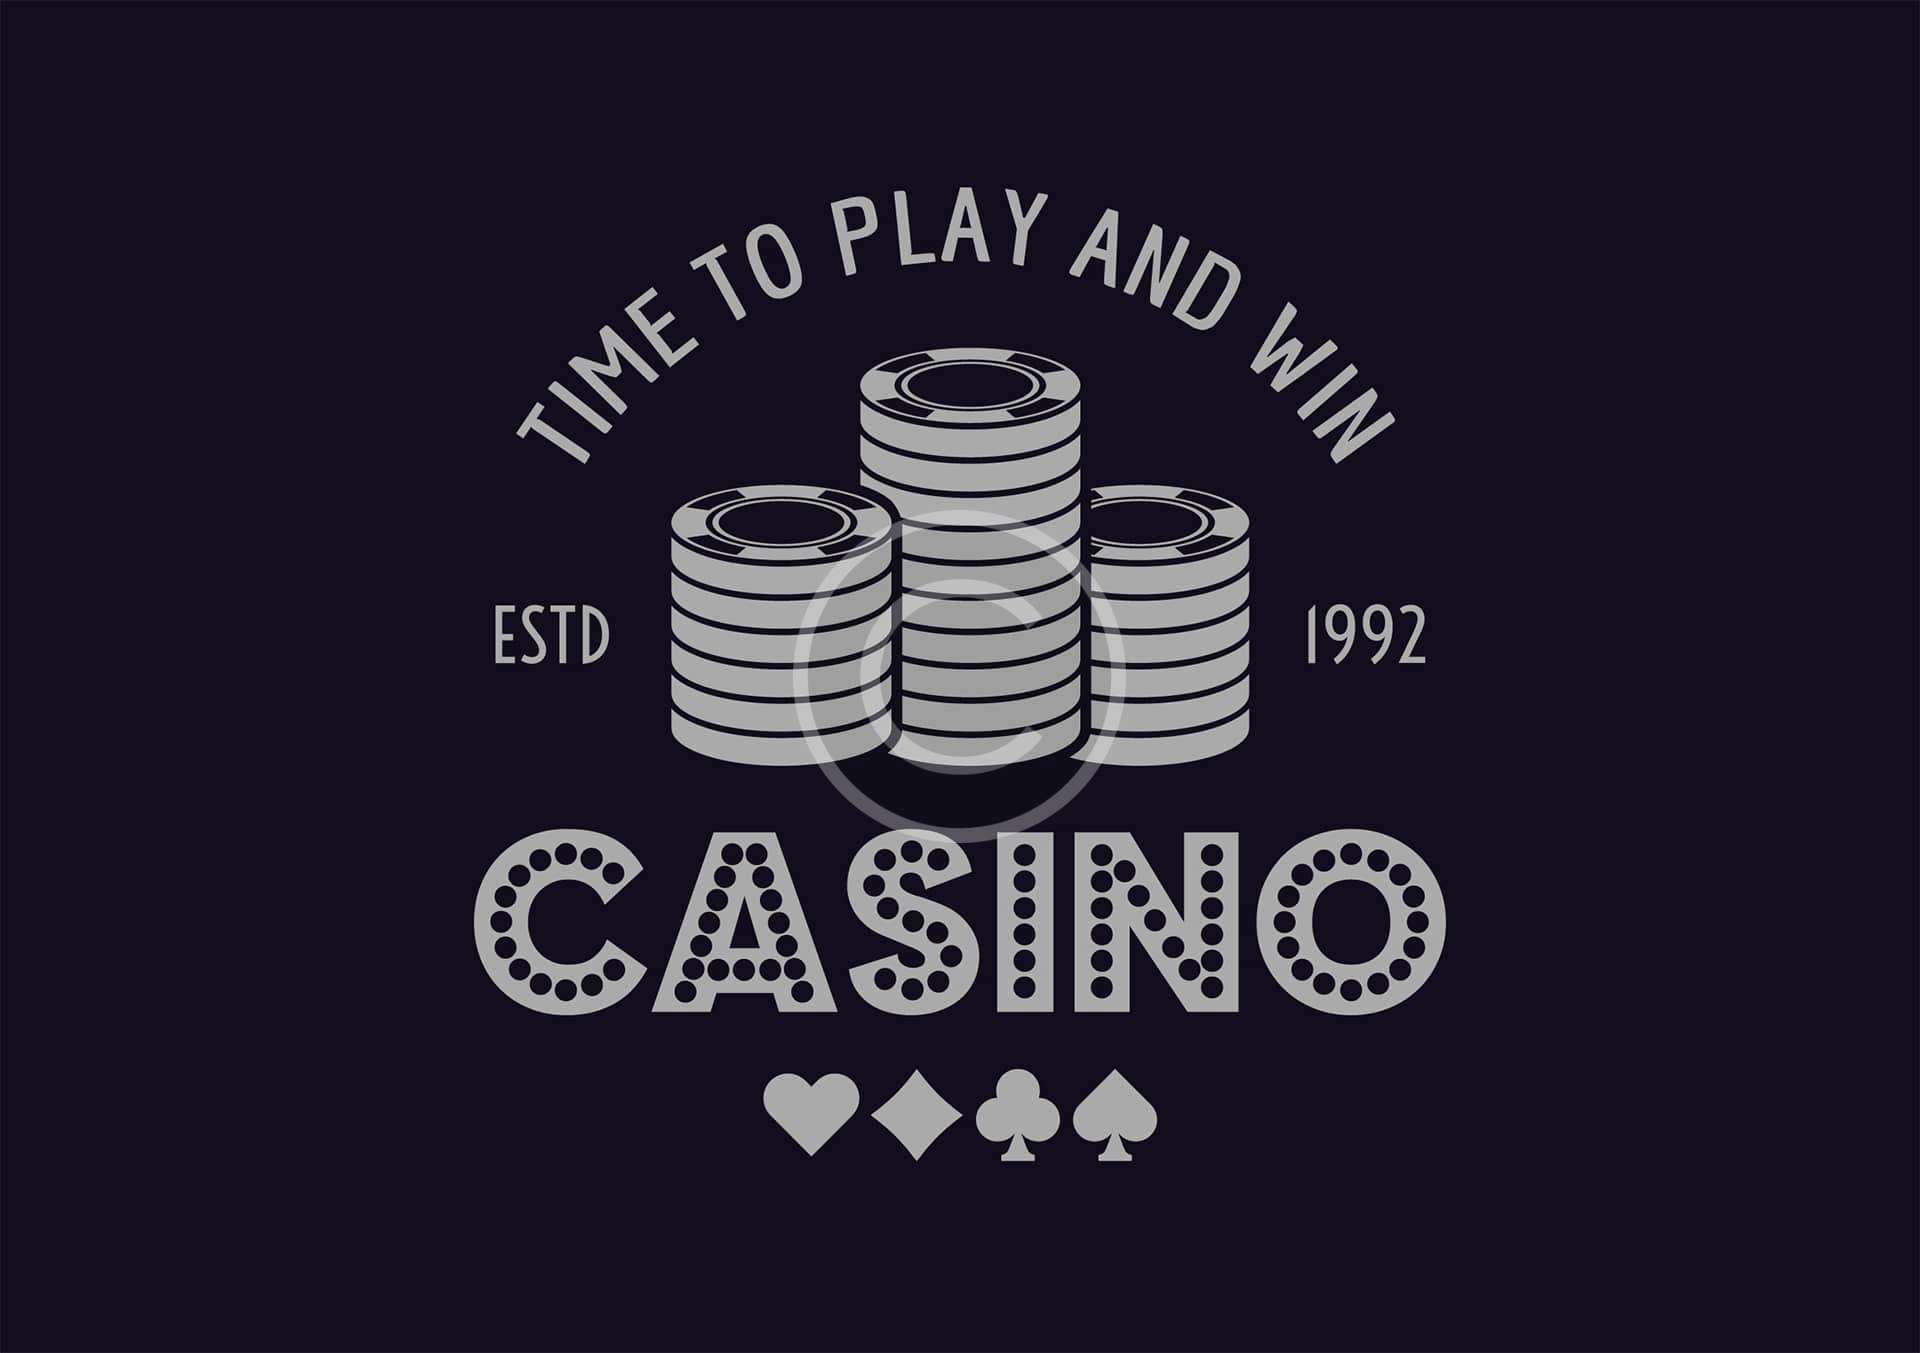 Casino’92